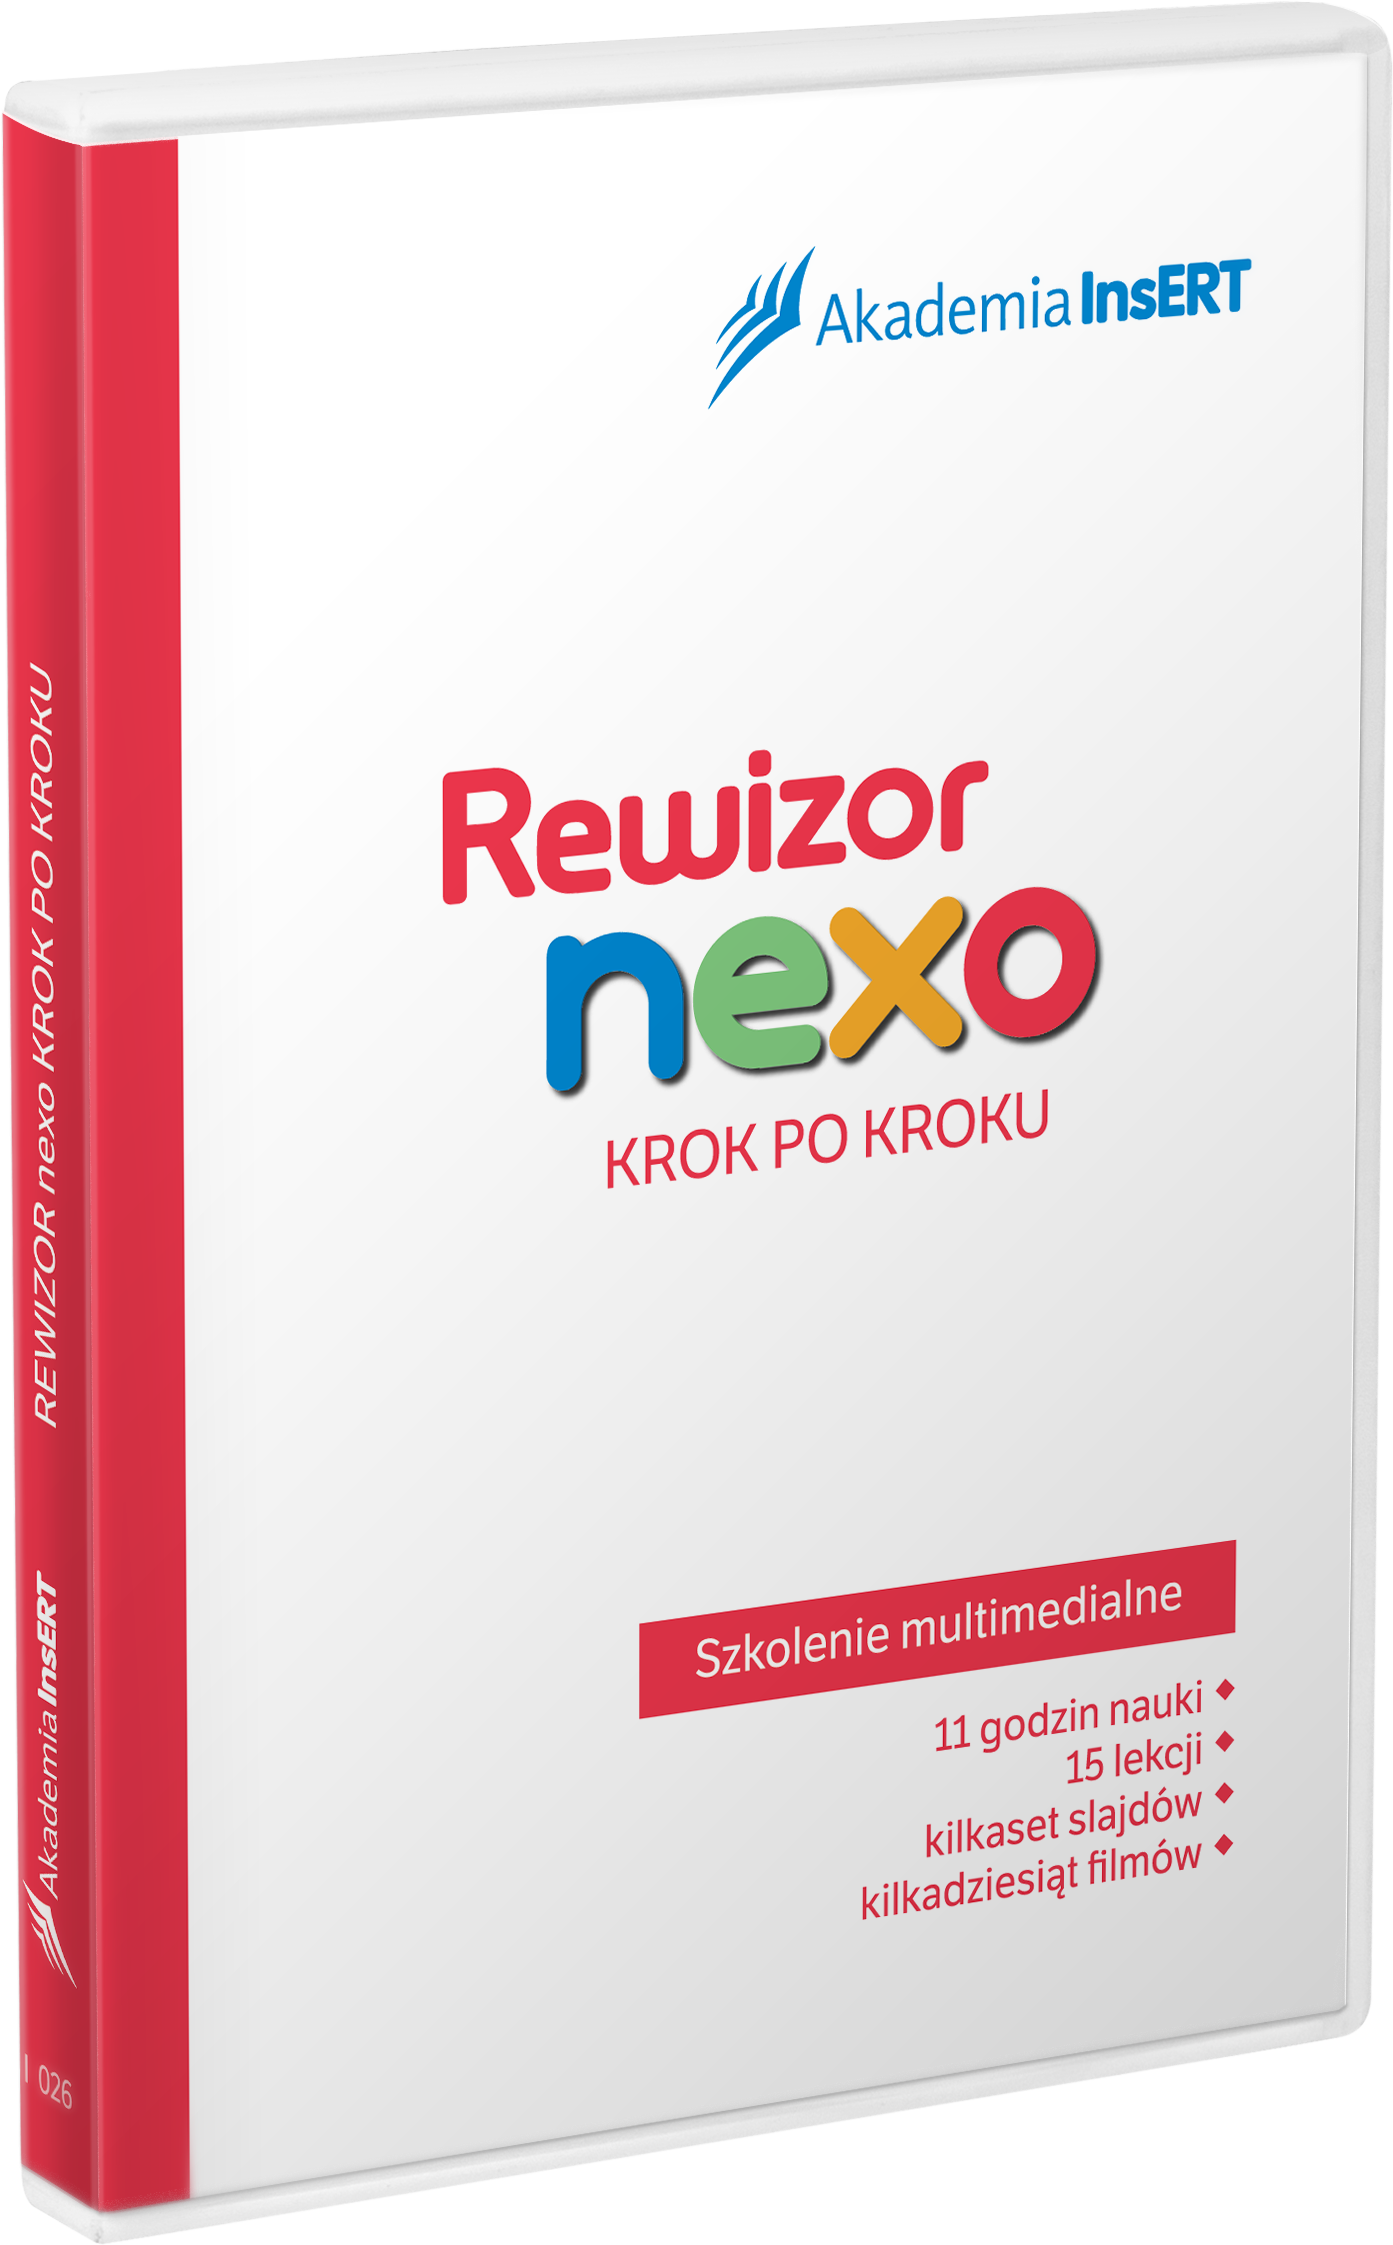 Rewizor_nexo_krok_po_kroku.png